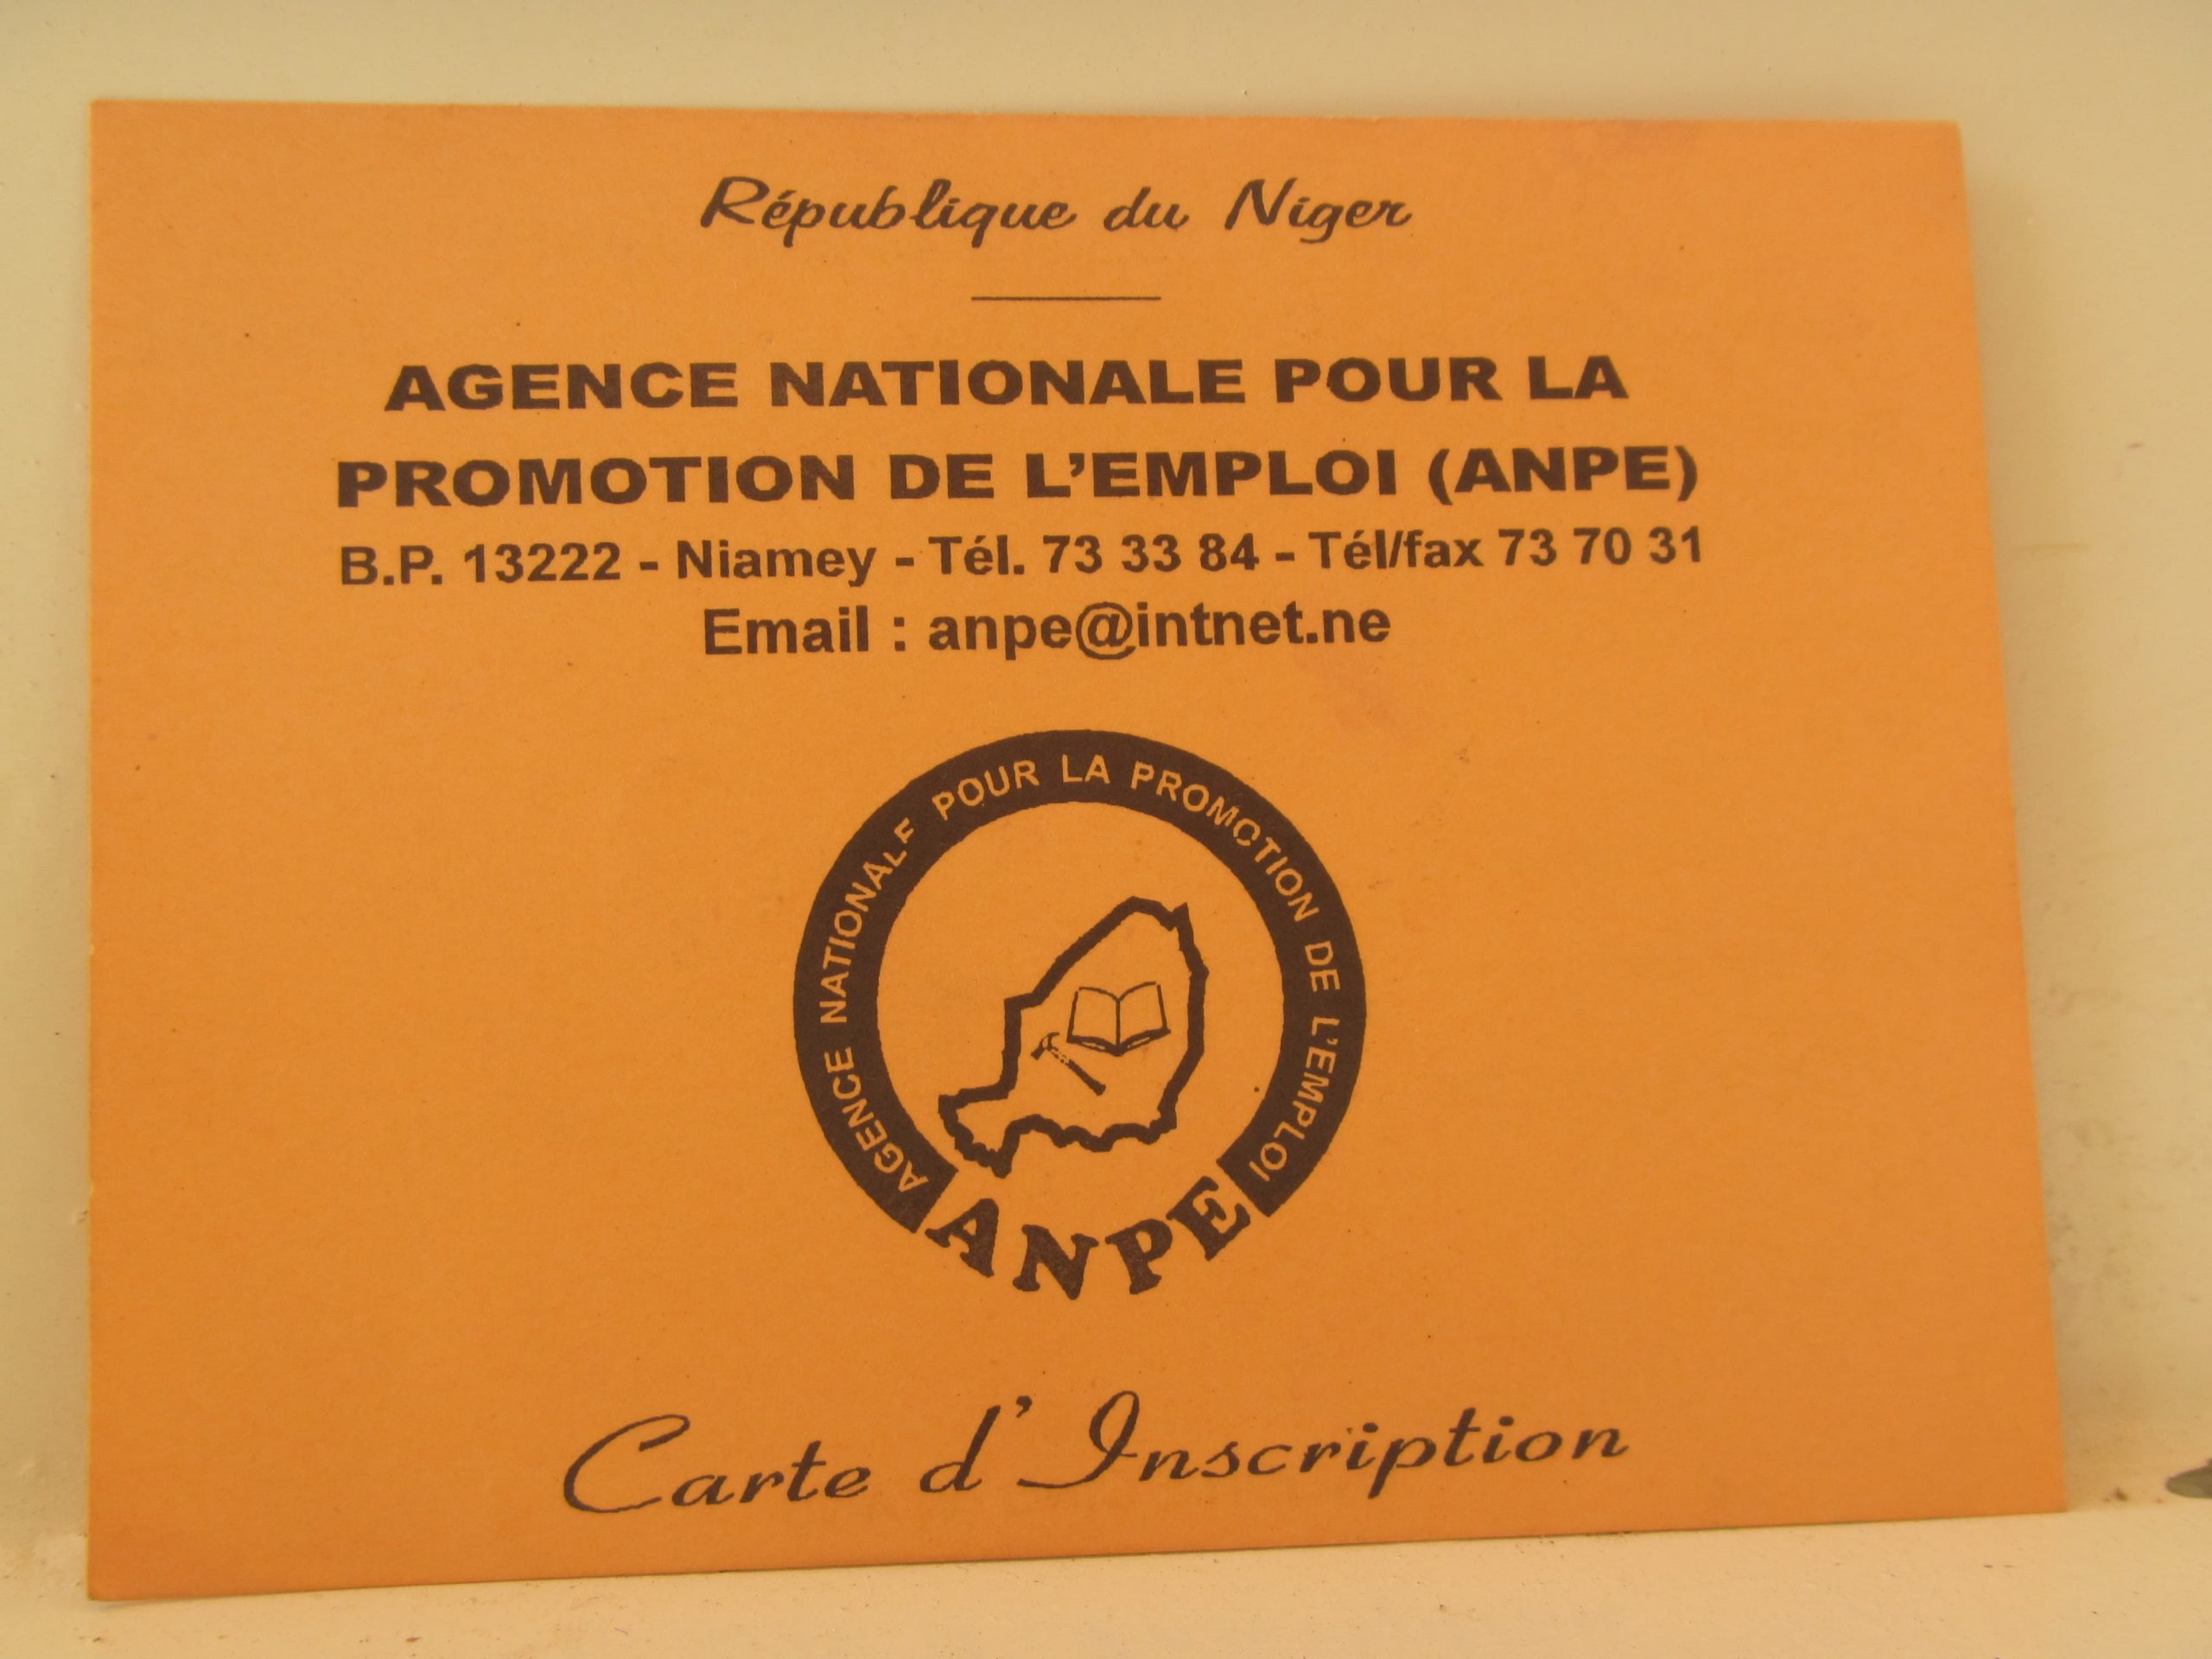 Le magazine du 25/09/2019 : Pourquoi la carte de l’agence pour la promotion de l’emploi au Niger ?